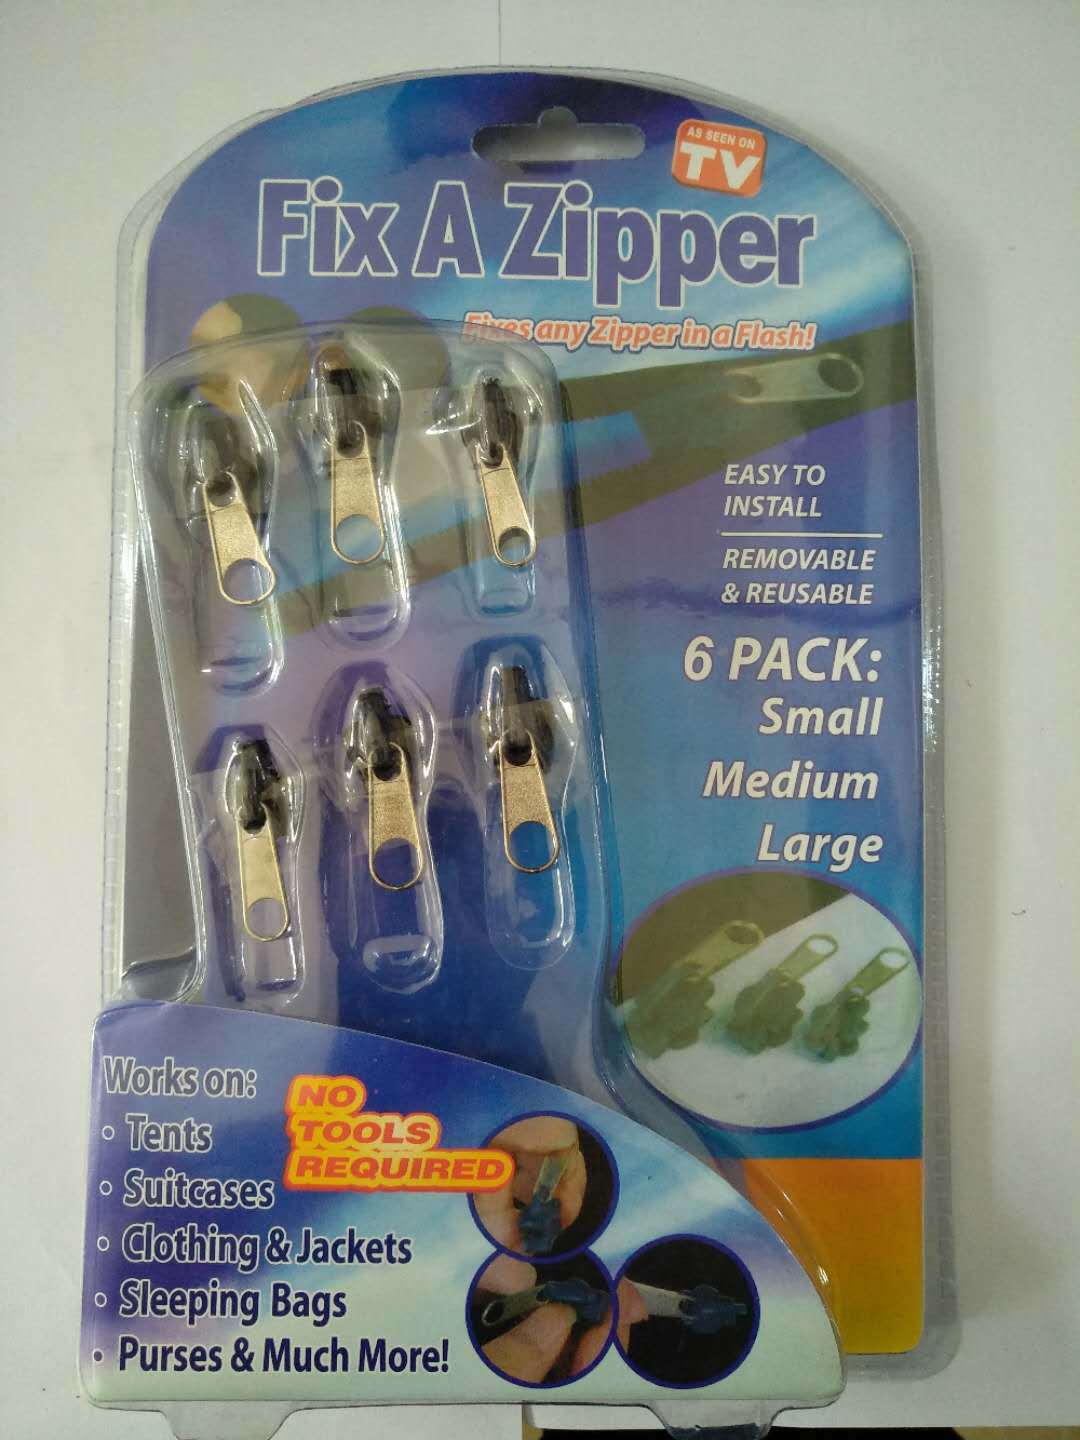 Universal Zipper Repair Kit Universal repair zipper repair kit